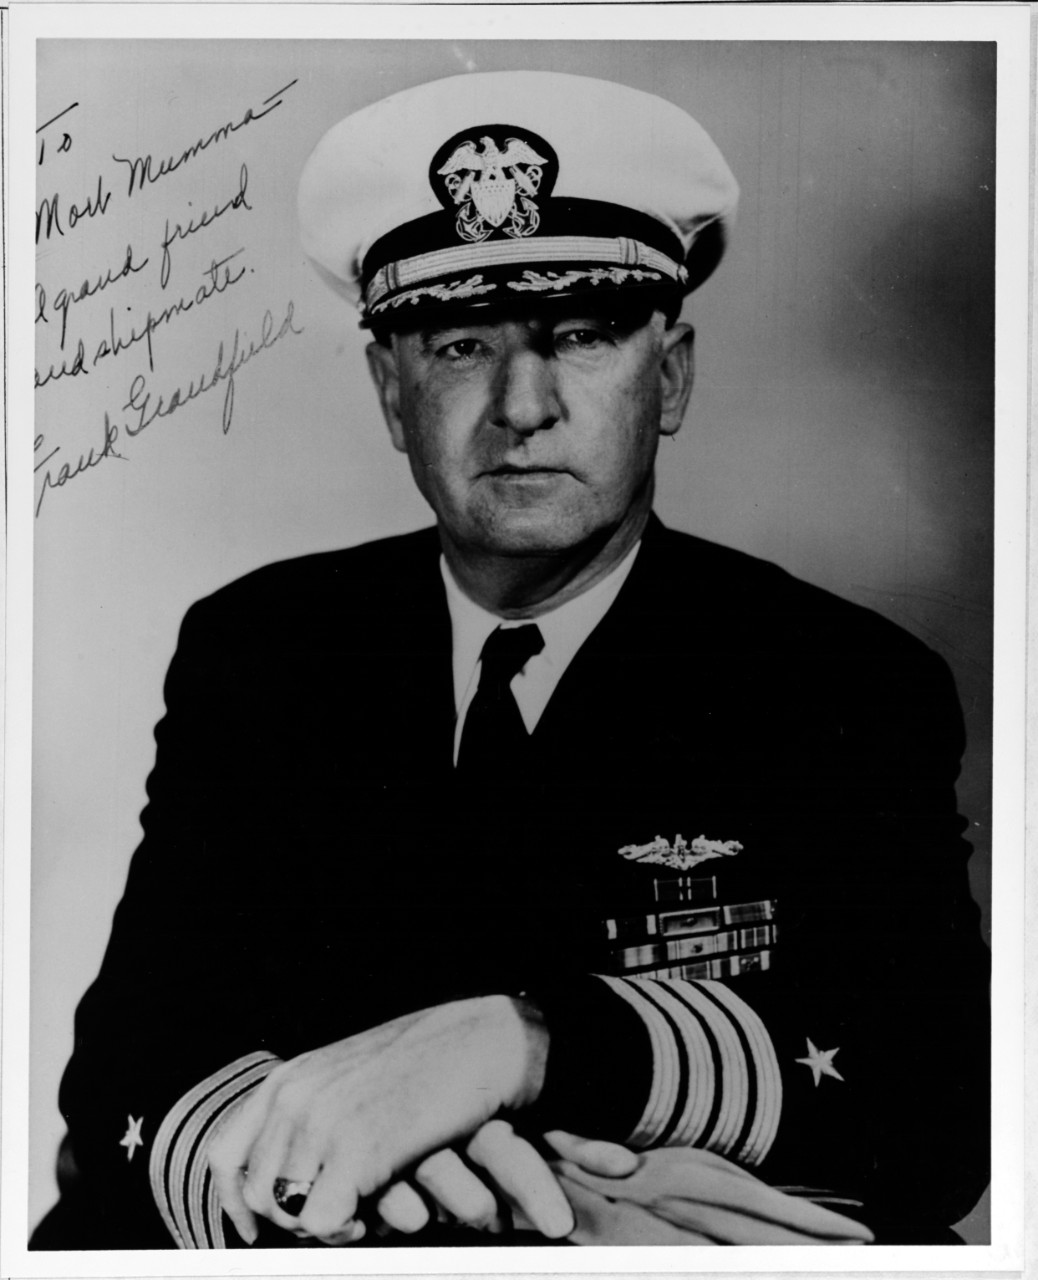 Captain F.J Grandfield, USN